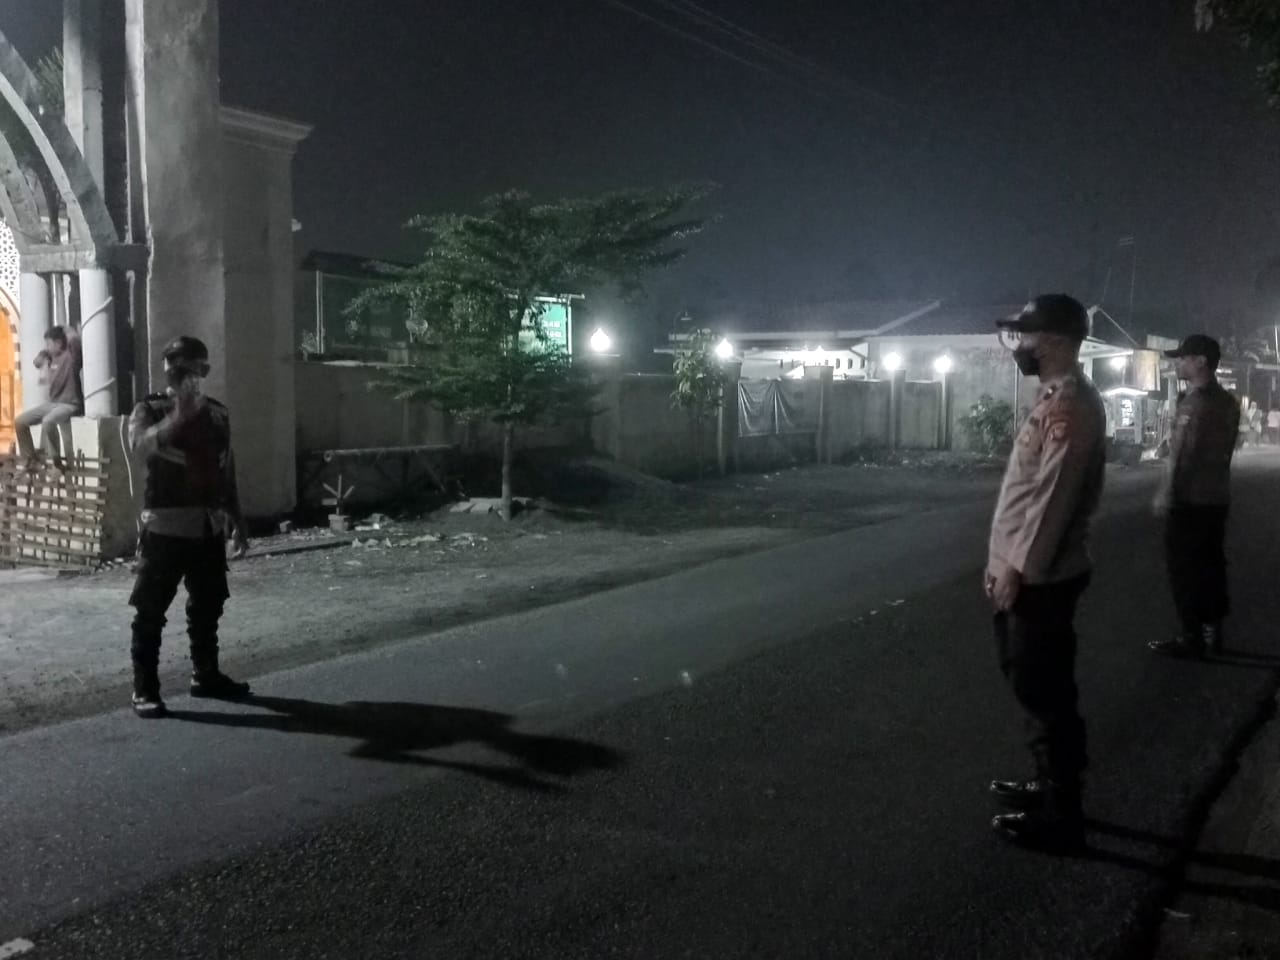 Pengamanan Ibadah Sholat Tarawih di Kuripan, Polisi Imbau Pemuda Jangan Nyalakan Petasan